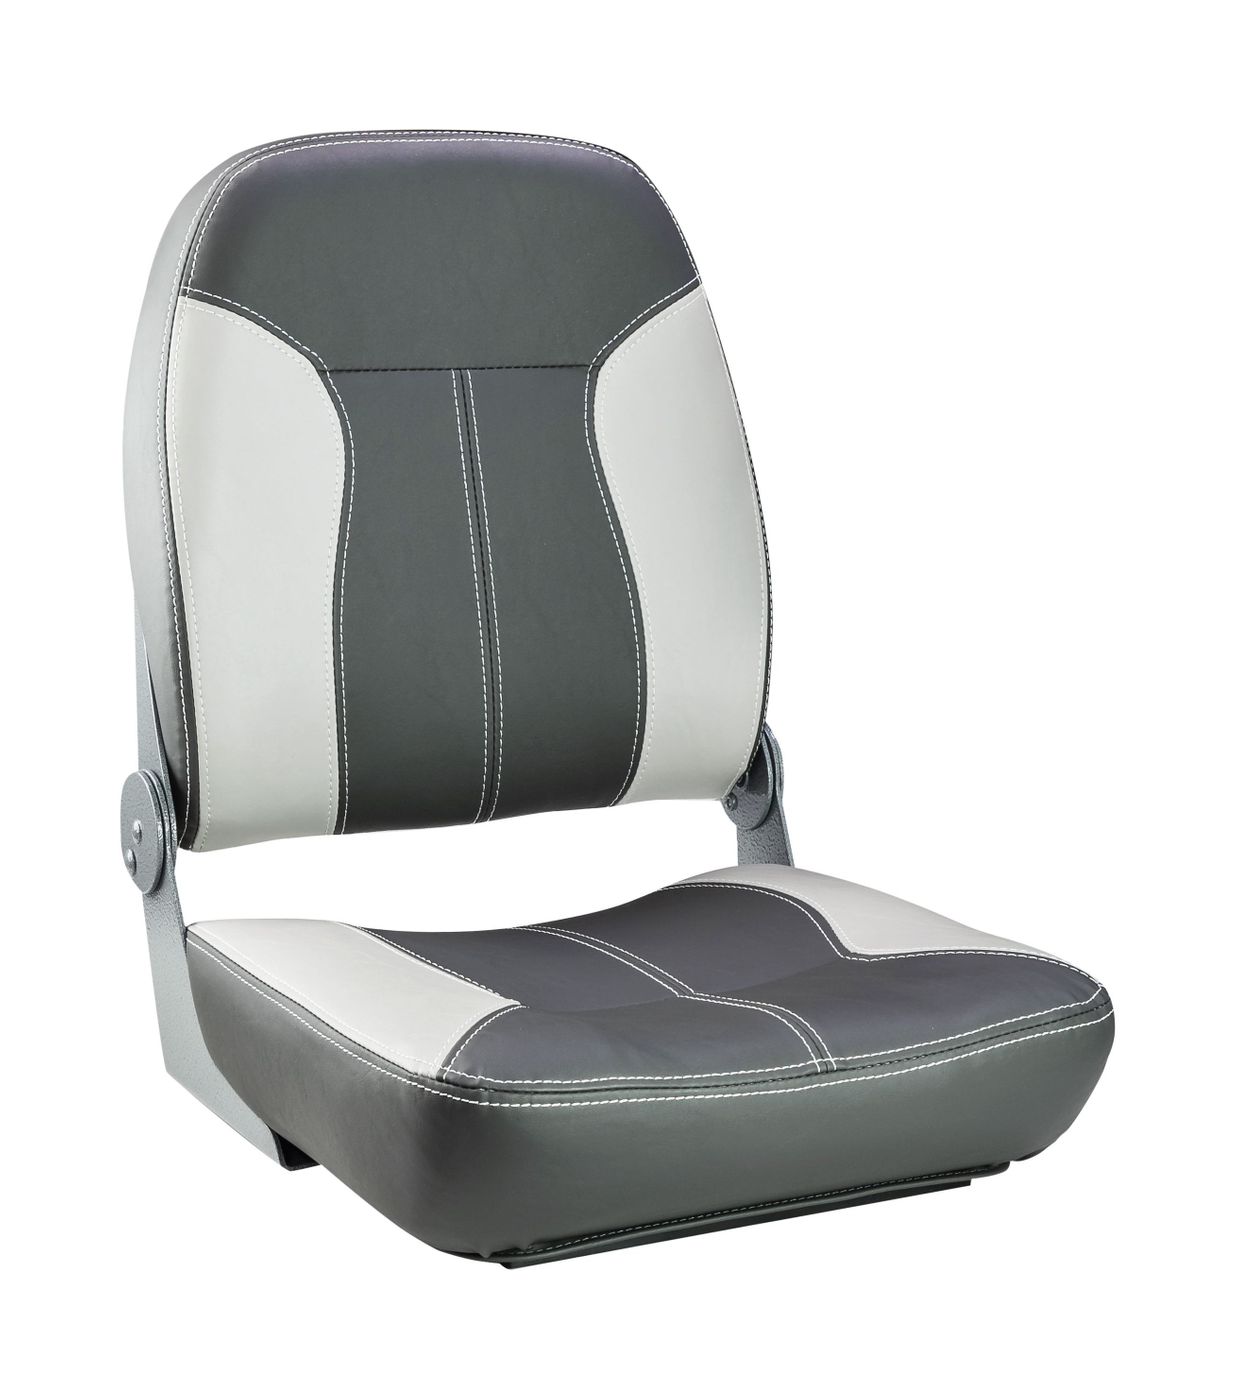 Кресло складное мягкое SPORT с высокой спинкой, серый/темно-серый 1040543 кресло ozark мягкое темно серый 1043224